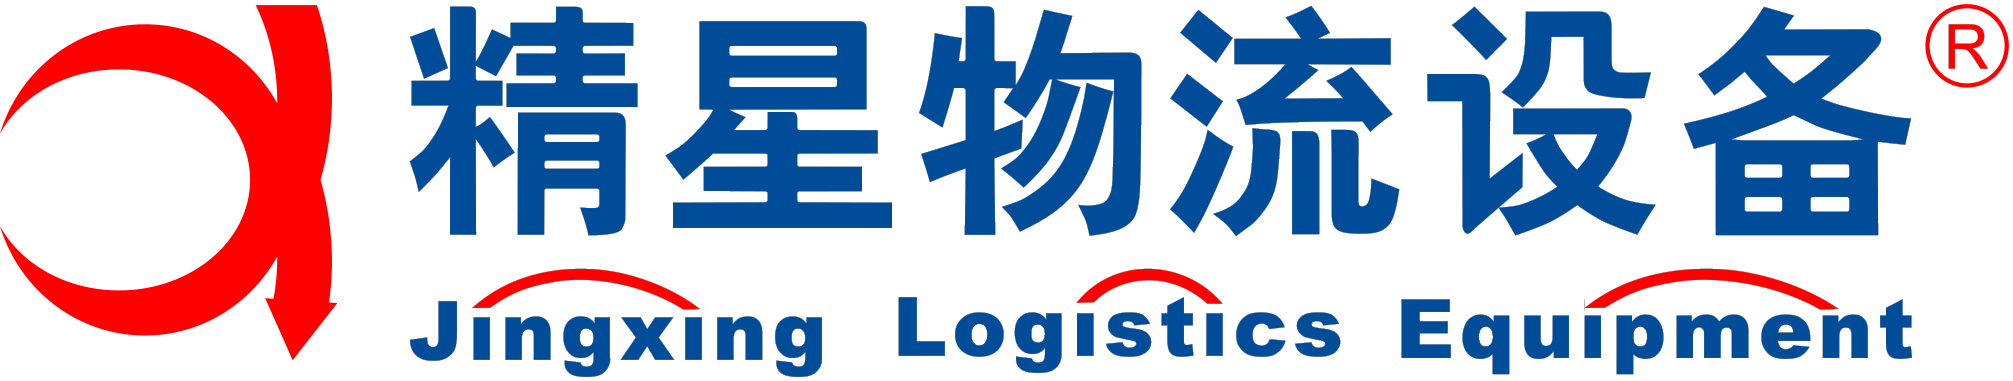 上海精星仓储设备工程有限公司